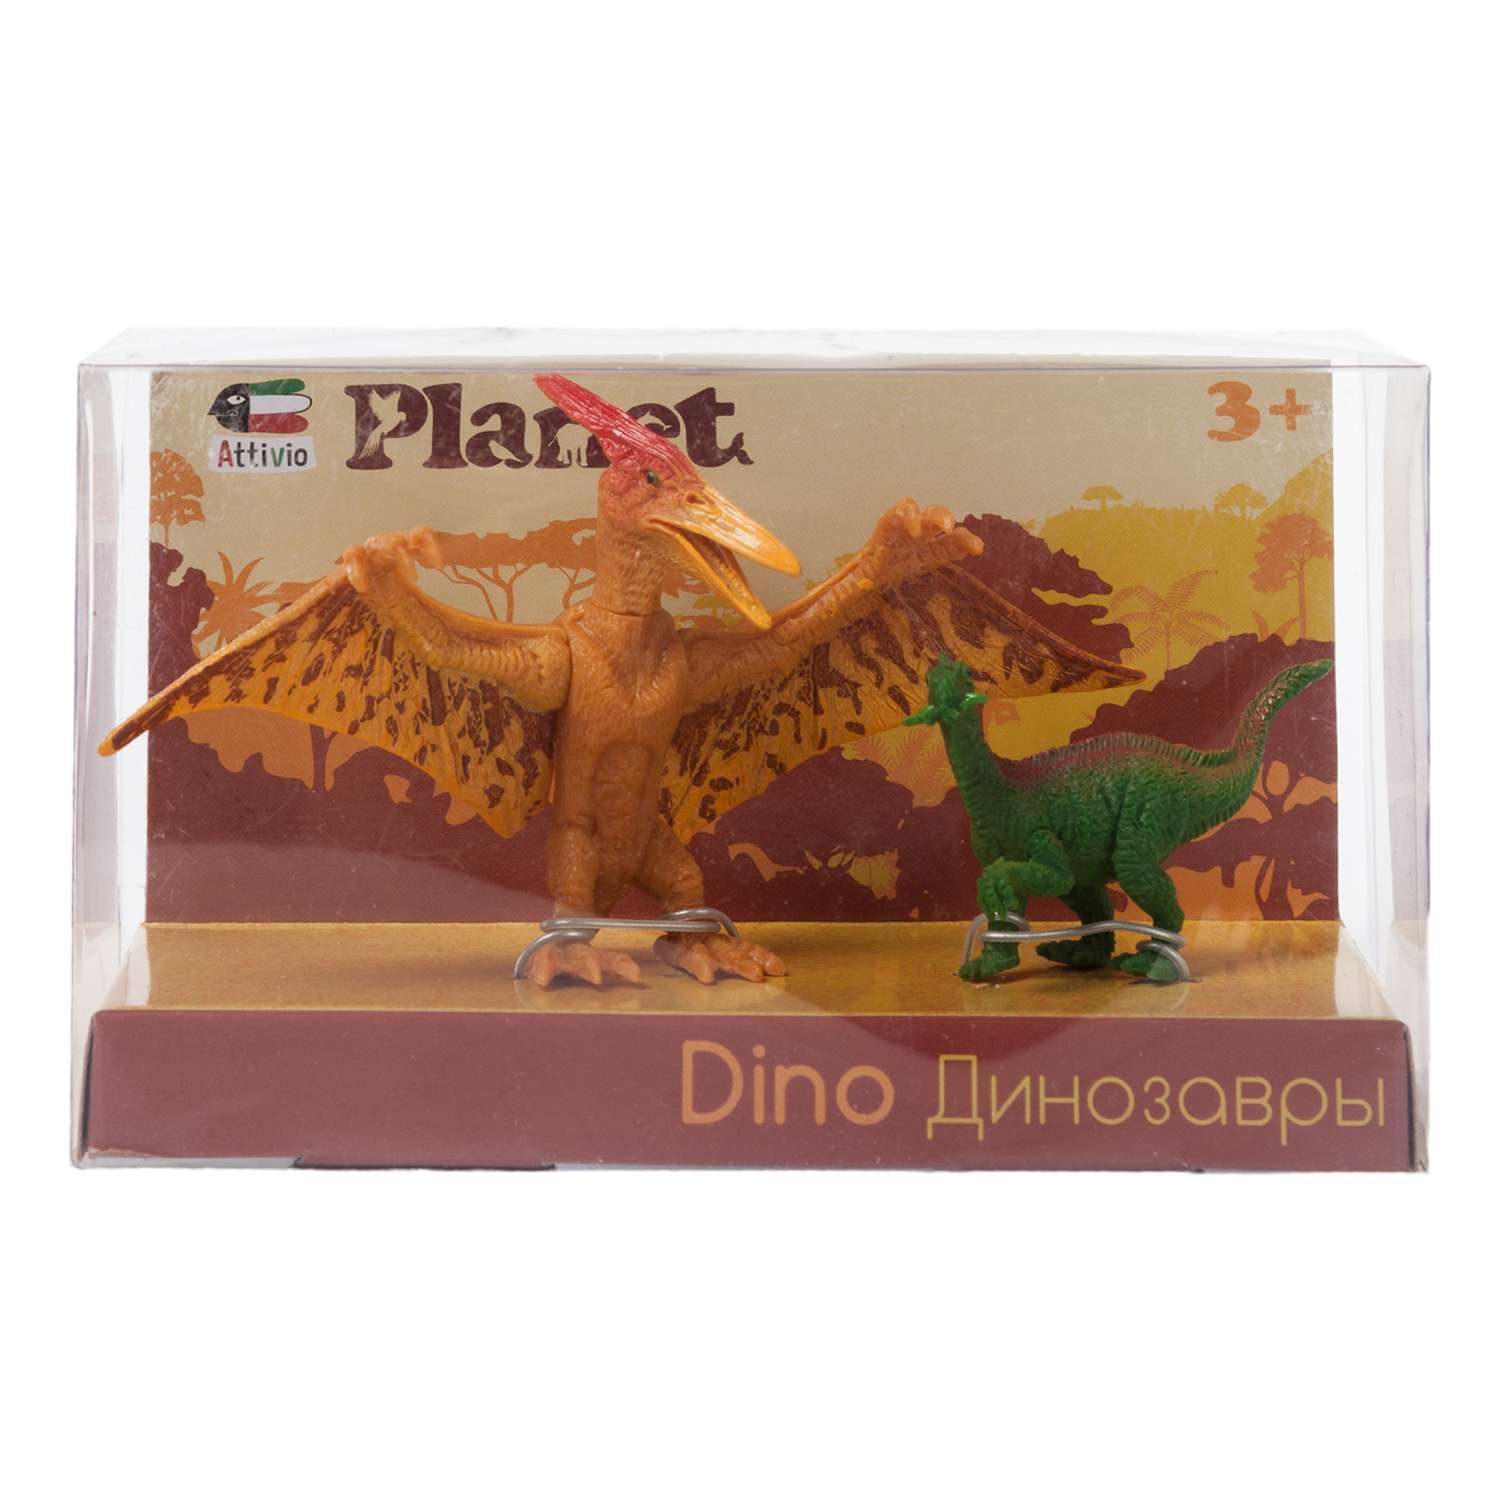 Игровой набор Attivio Динозавры 2 шт в ассортименте - фото 9